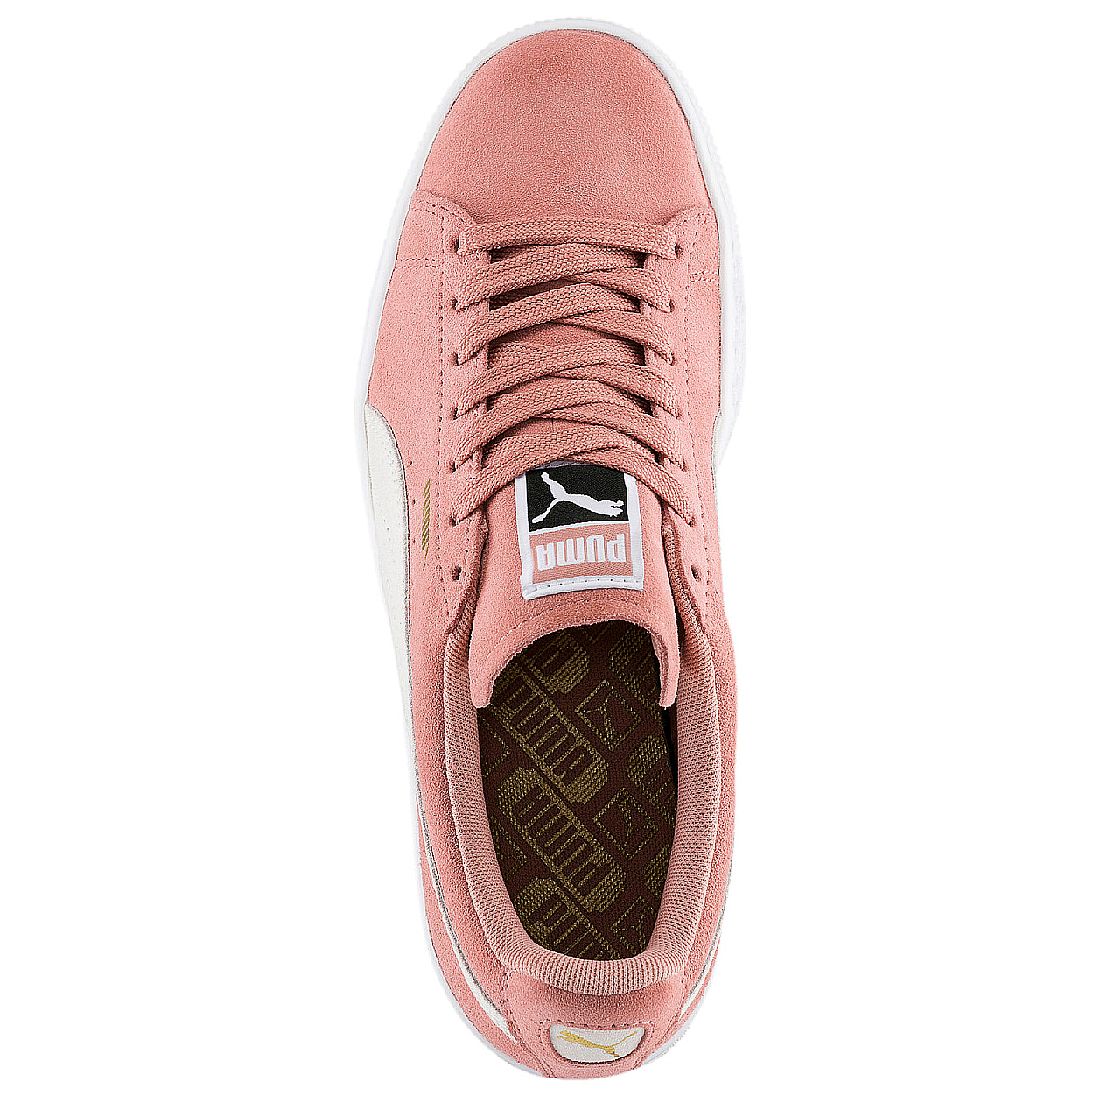 Puma Suede Classic Wn´s Damen Sneaker Schuhe 355462 56 braun